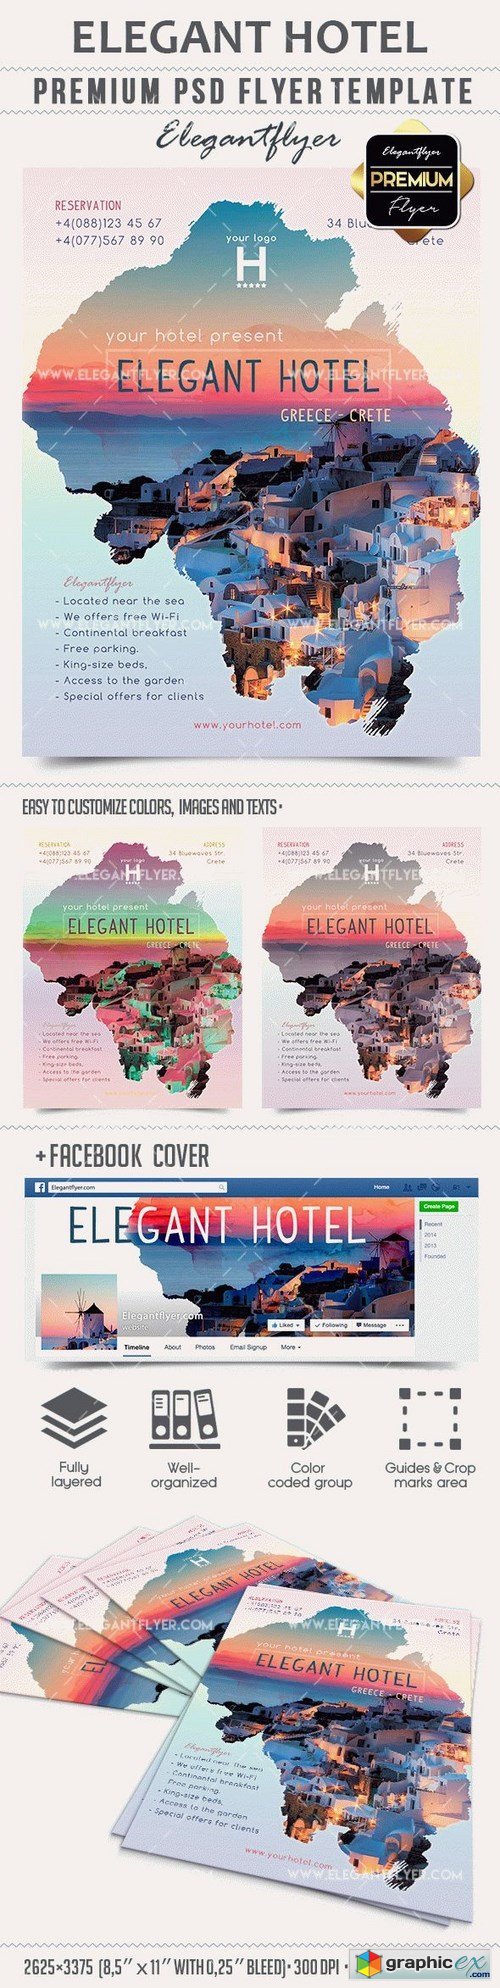 Elegant Hotel  Premium PSD Template + Facebook cover